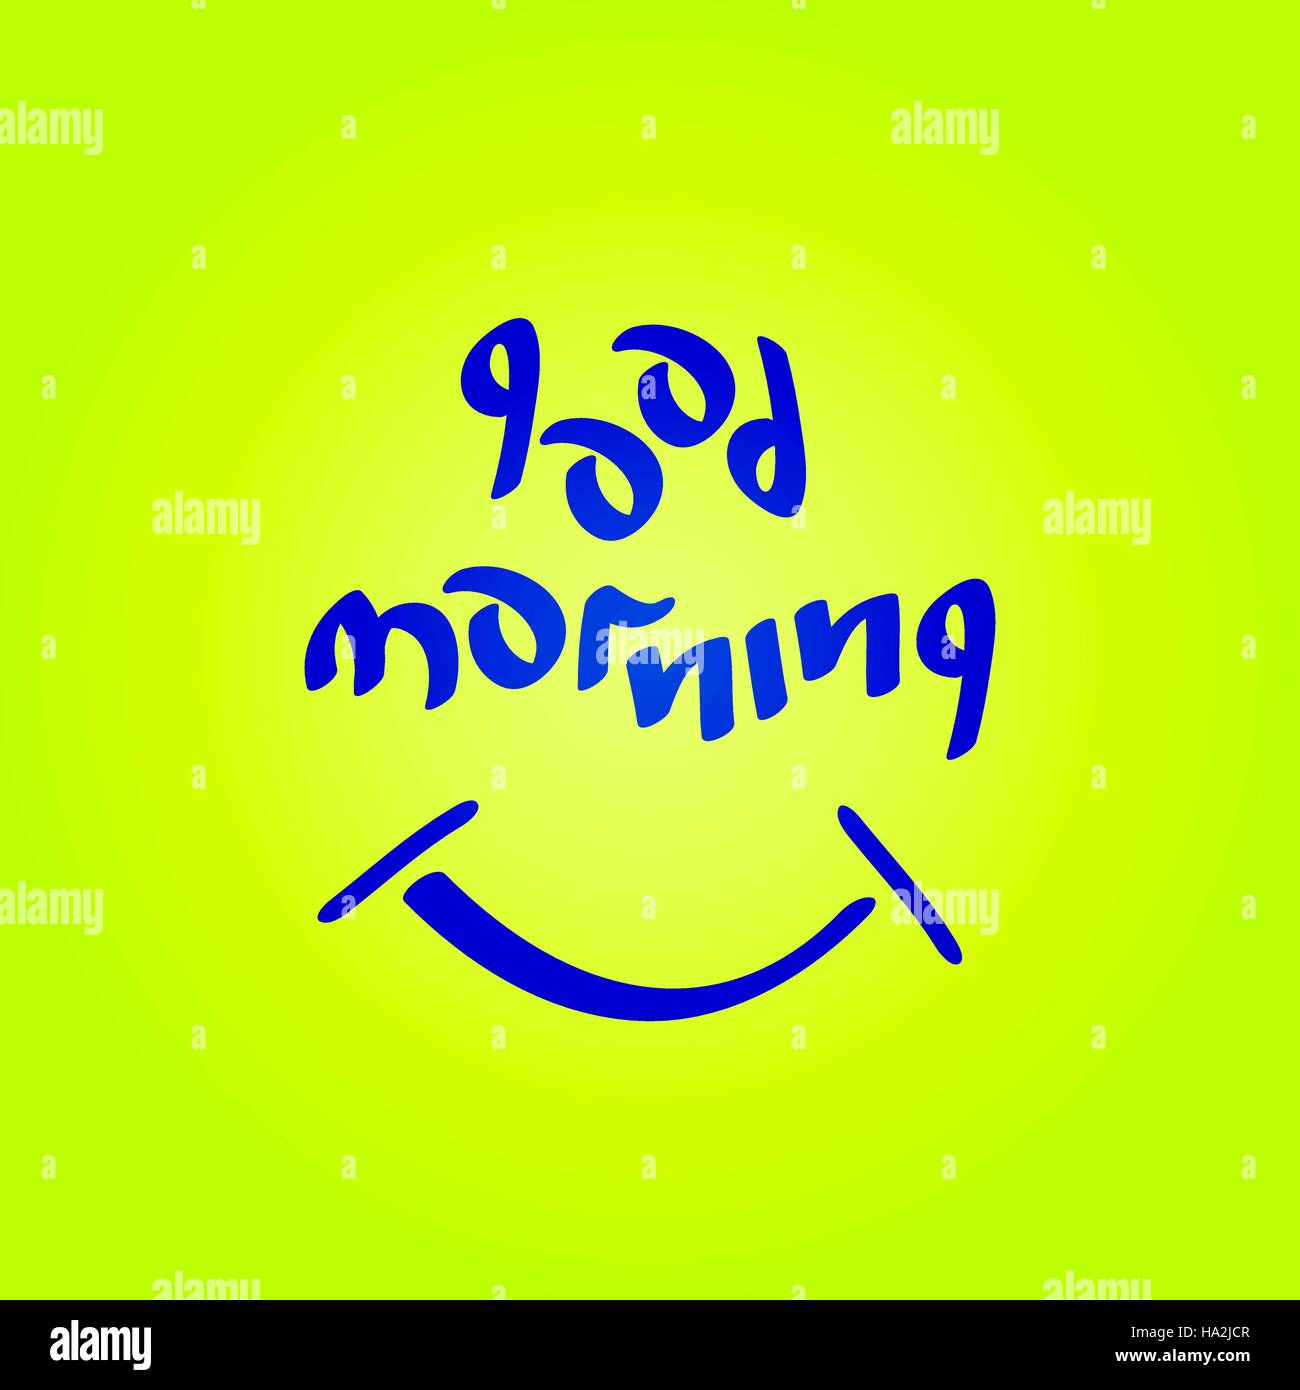 Buona mattina testo con simbolo sorridente divertimento stato d'animo positivo illustrazione vettoriale. Illustrazione Vettoriale